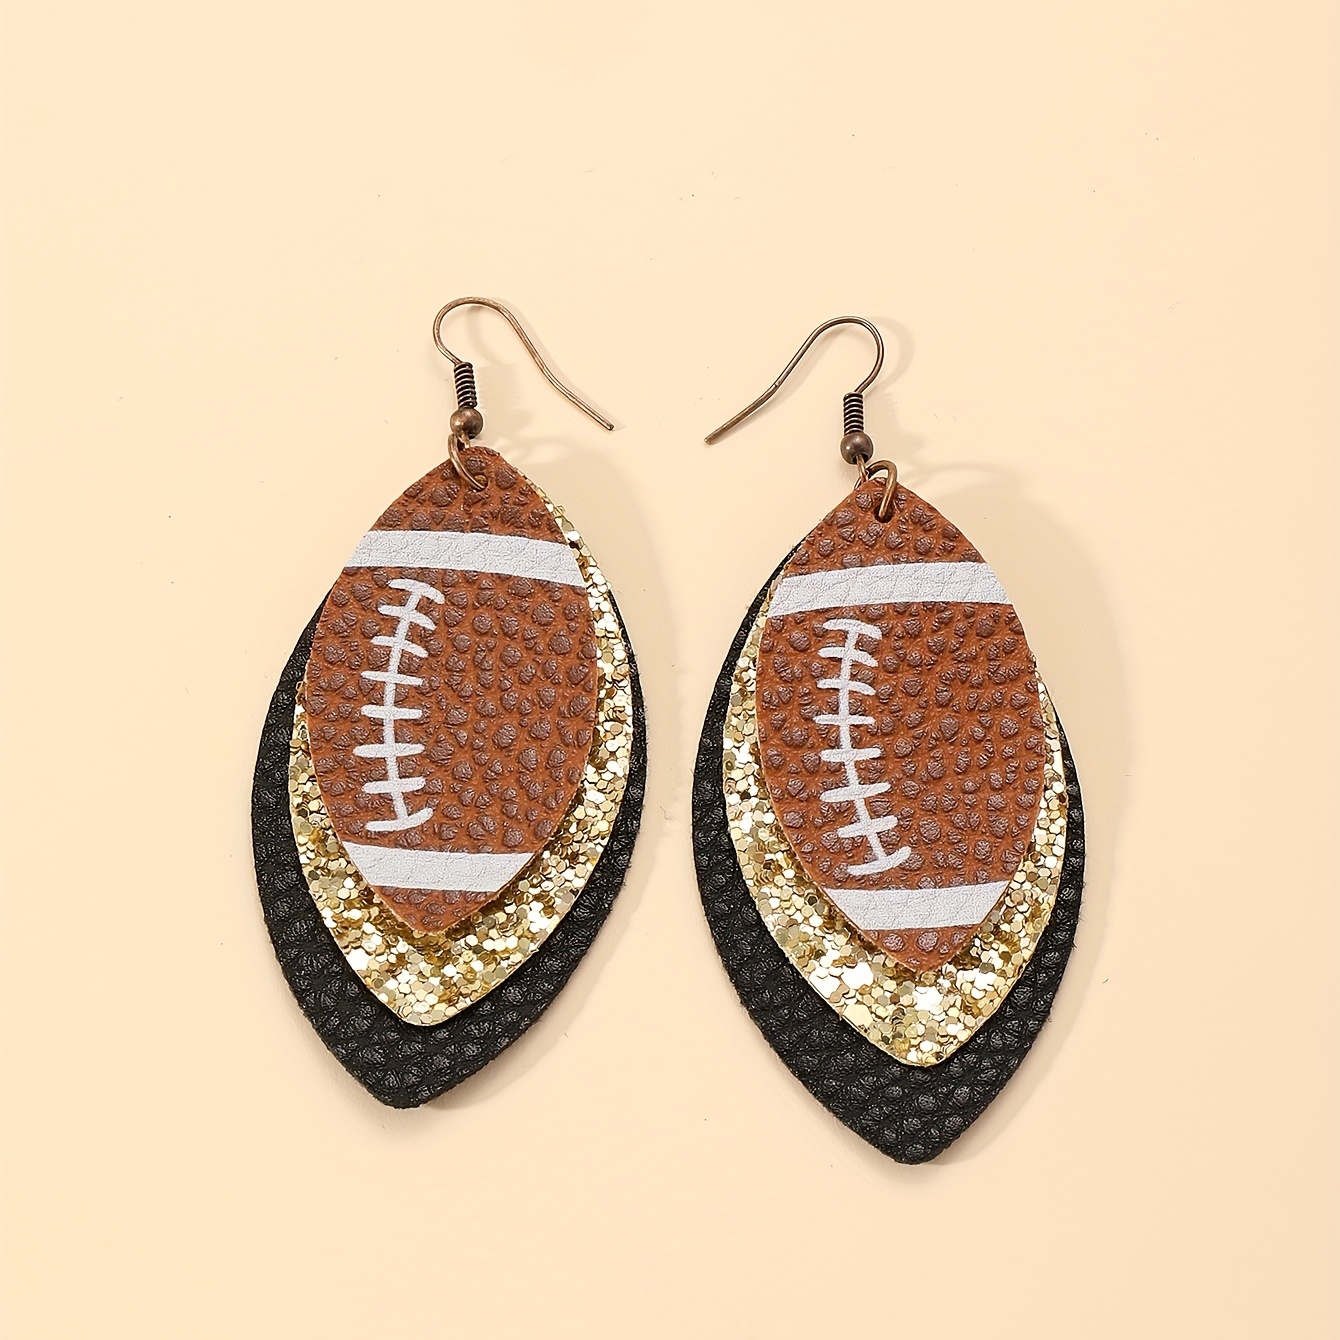 Pjtewawe Body Jewelry Earings Set Cute Soccer PU Stud Dangle Earrings  Football Basketball Volleyball Basebal Dangle Earrings Sports Fans  Statement